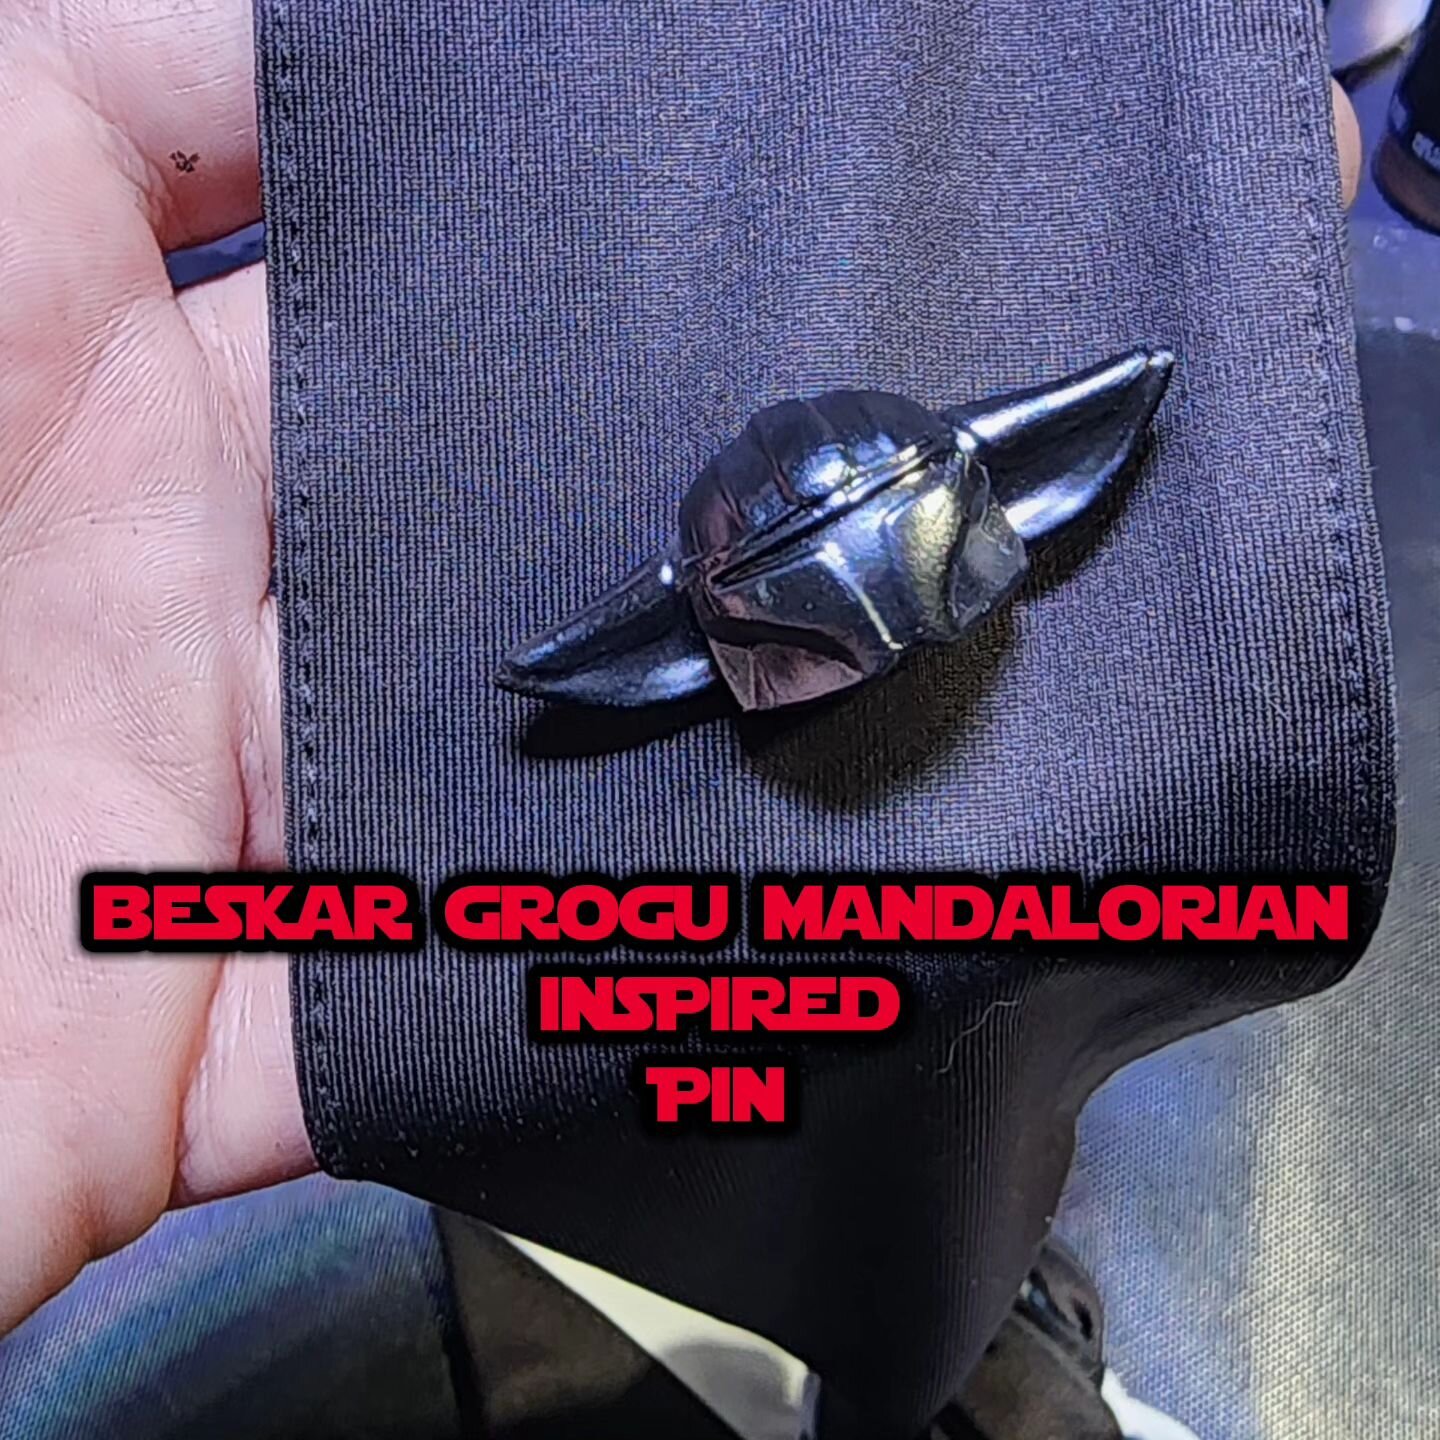 Beskar Grogu Mandalorian Inspired Pin available now !ETSY  LINK IN BIO 

💥💥💥💥💥💥💢
#BESKAR #GROGU #MANDALORIAN #BESKARPIN #GROGUPIN #PADAWANDALORIAN #THISISTHEWAY #MISFITSCRAPS